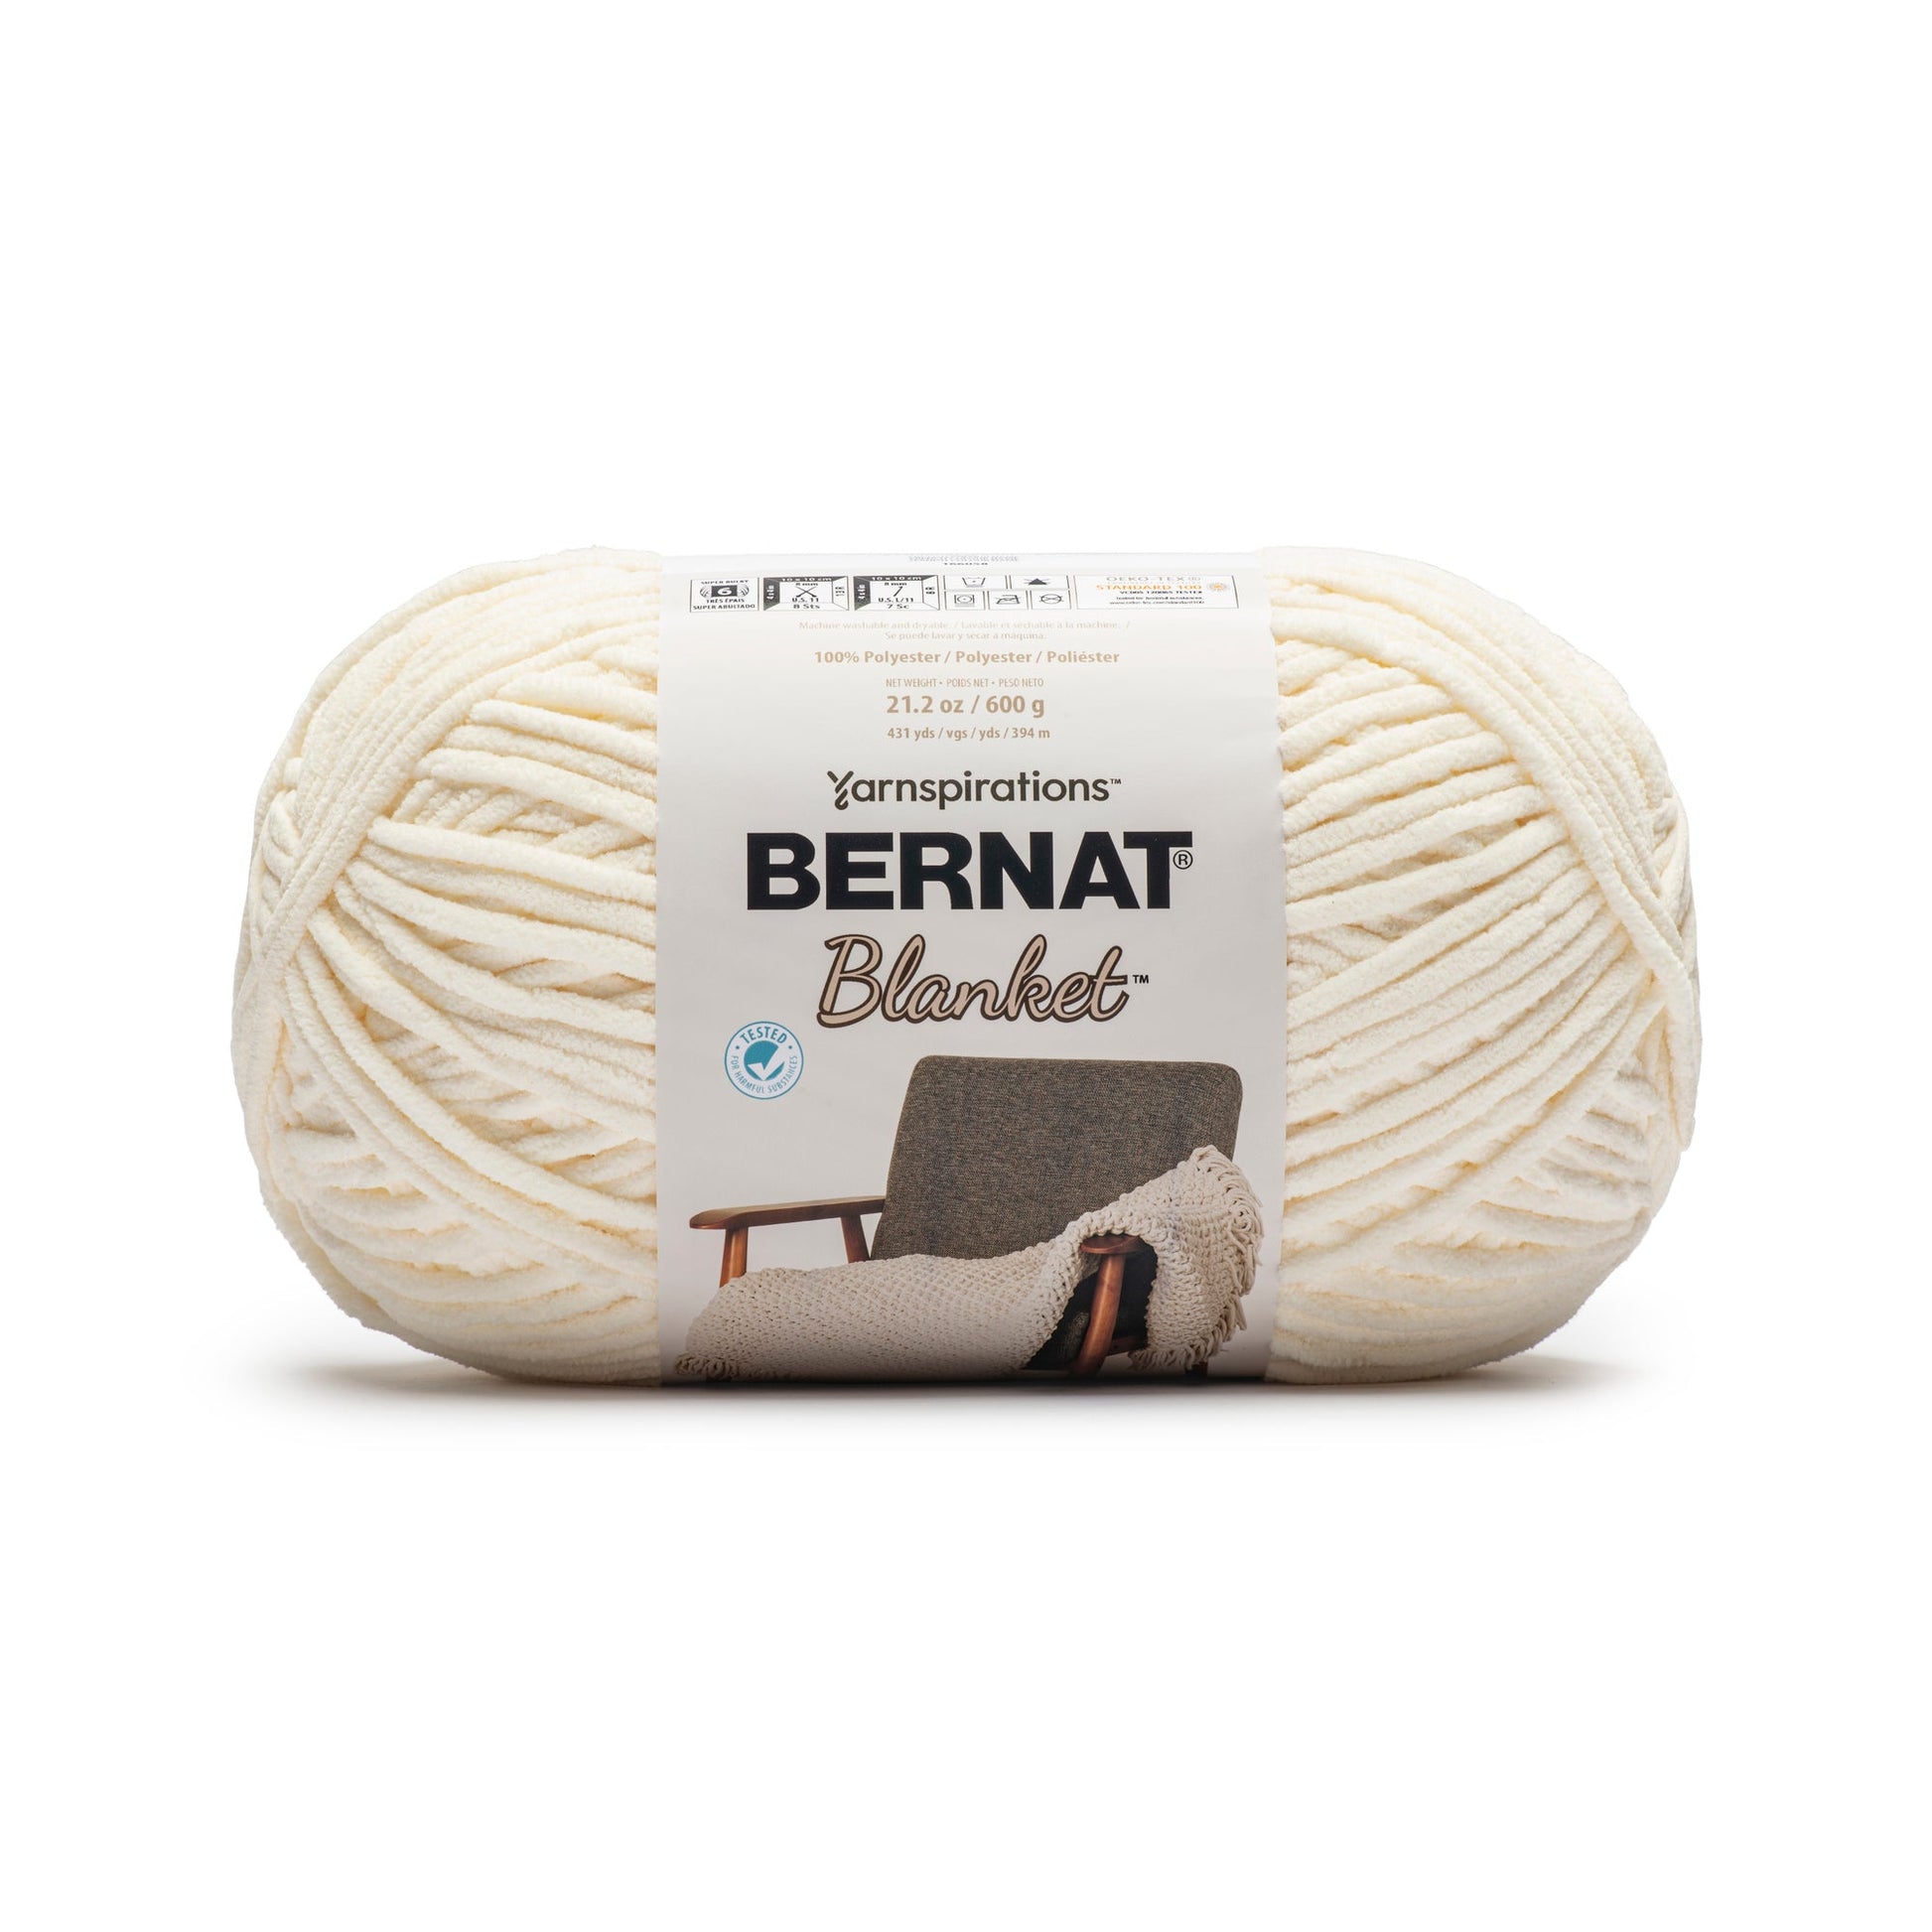 Bernat Blanket Yarn (600g/21.2oz) - Discontinued Shades